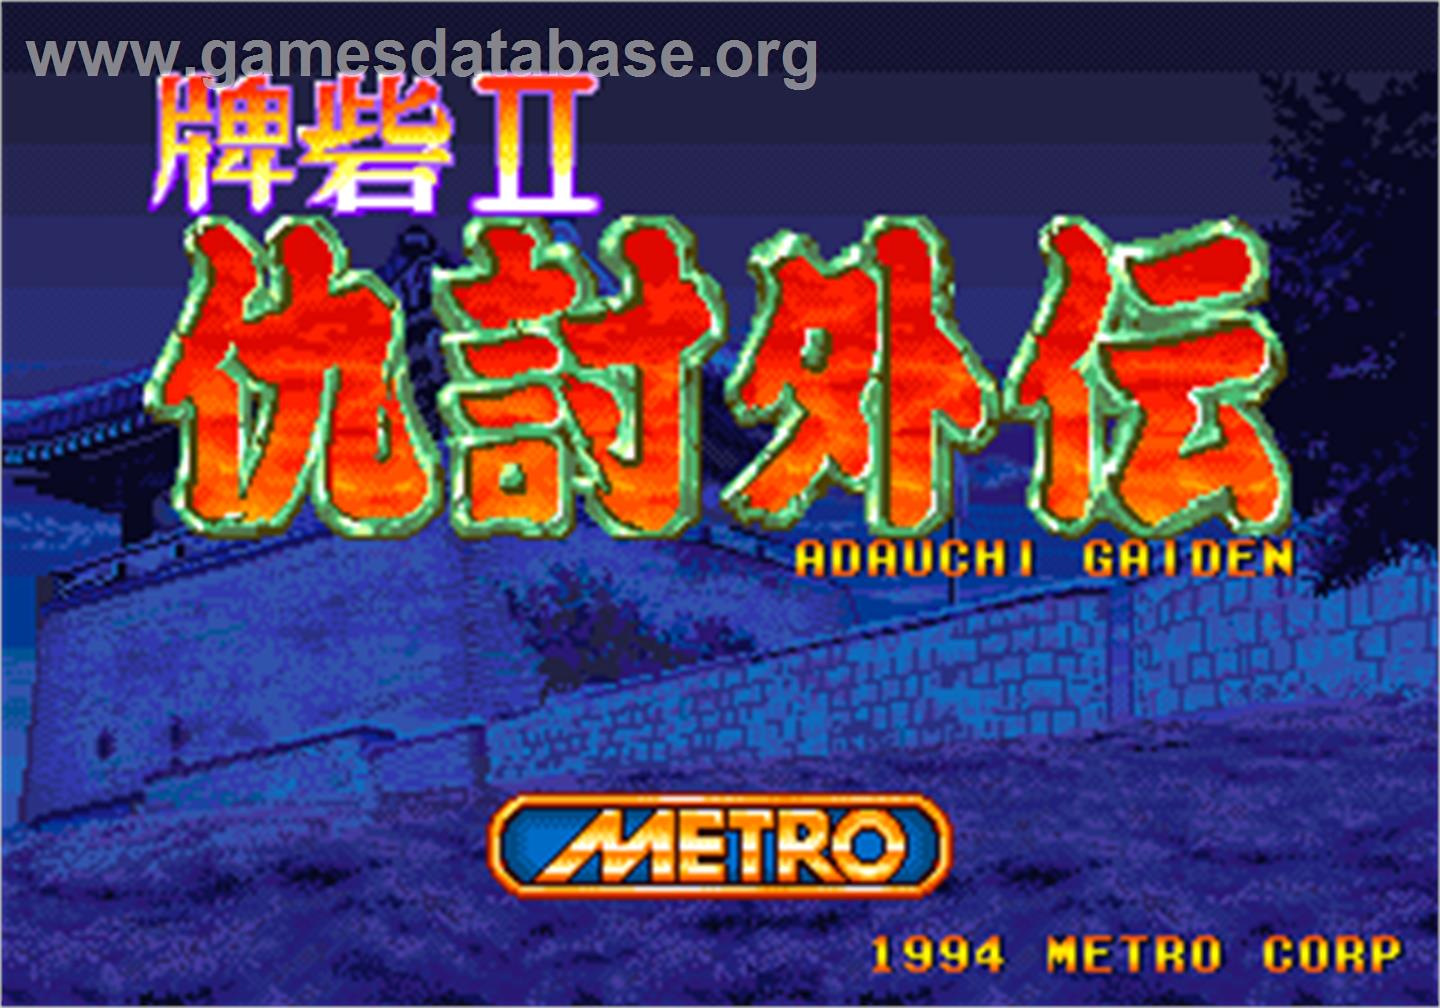 Toride II Adauchi Gaiden - Arcade - Artwork - Title Screen